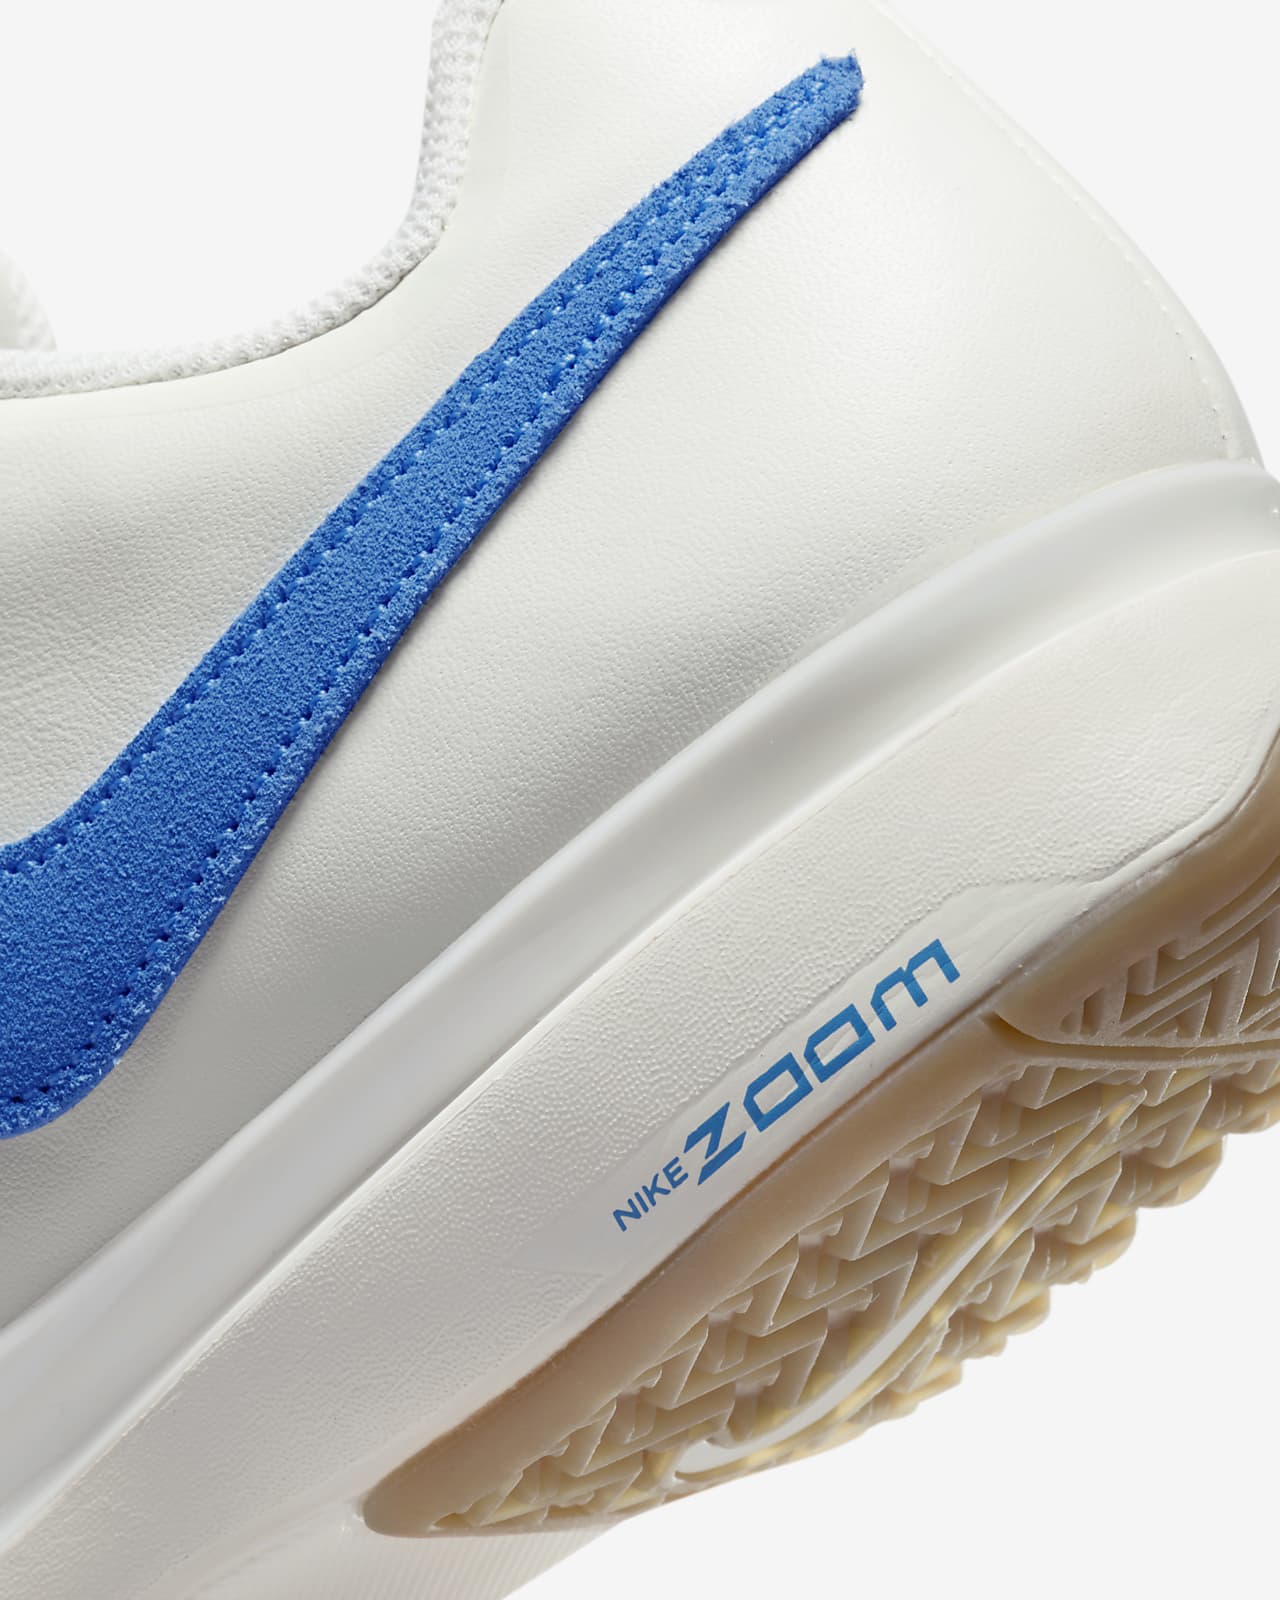 NikeCourt Air Zoom Vapor 9.5 Tour Leather Men's Tennis Shoes